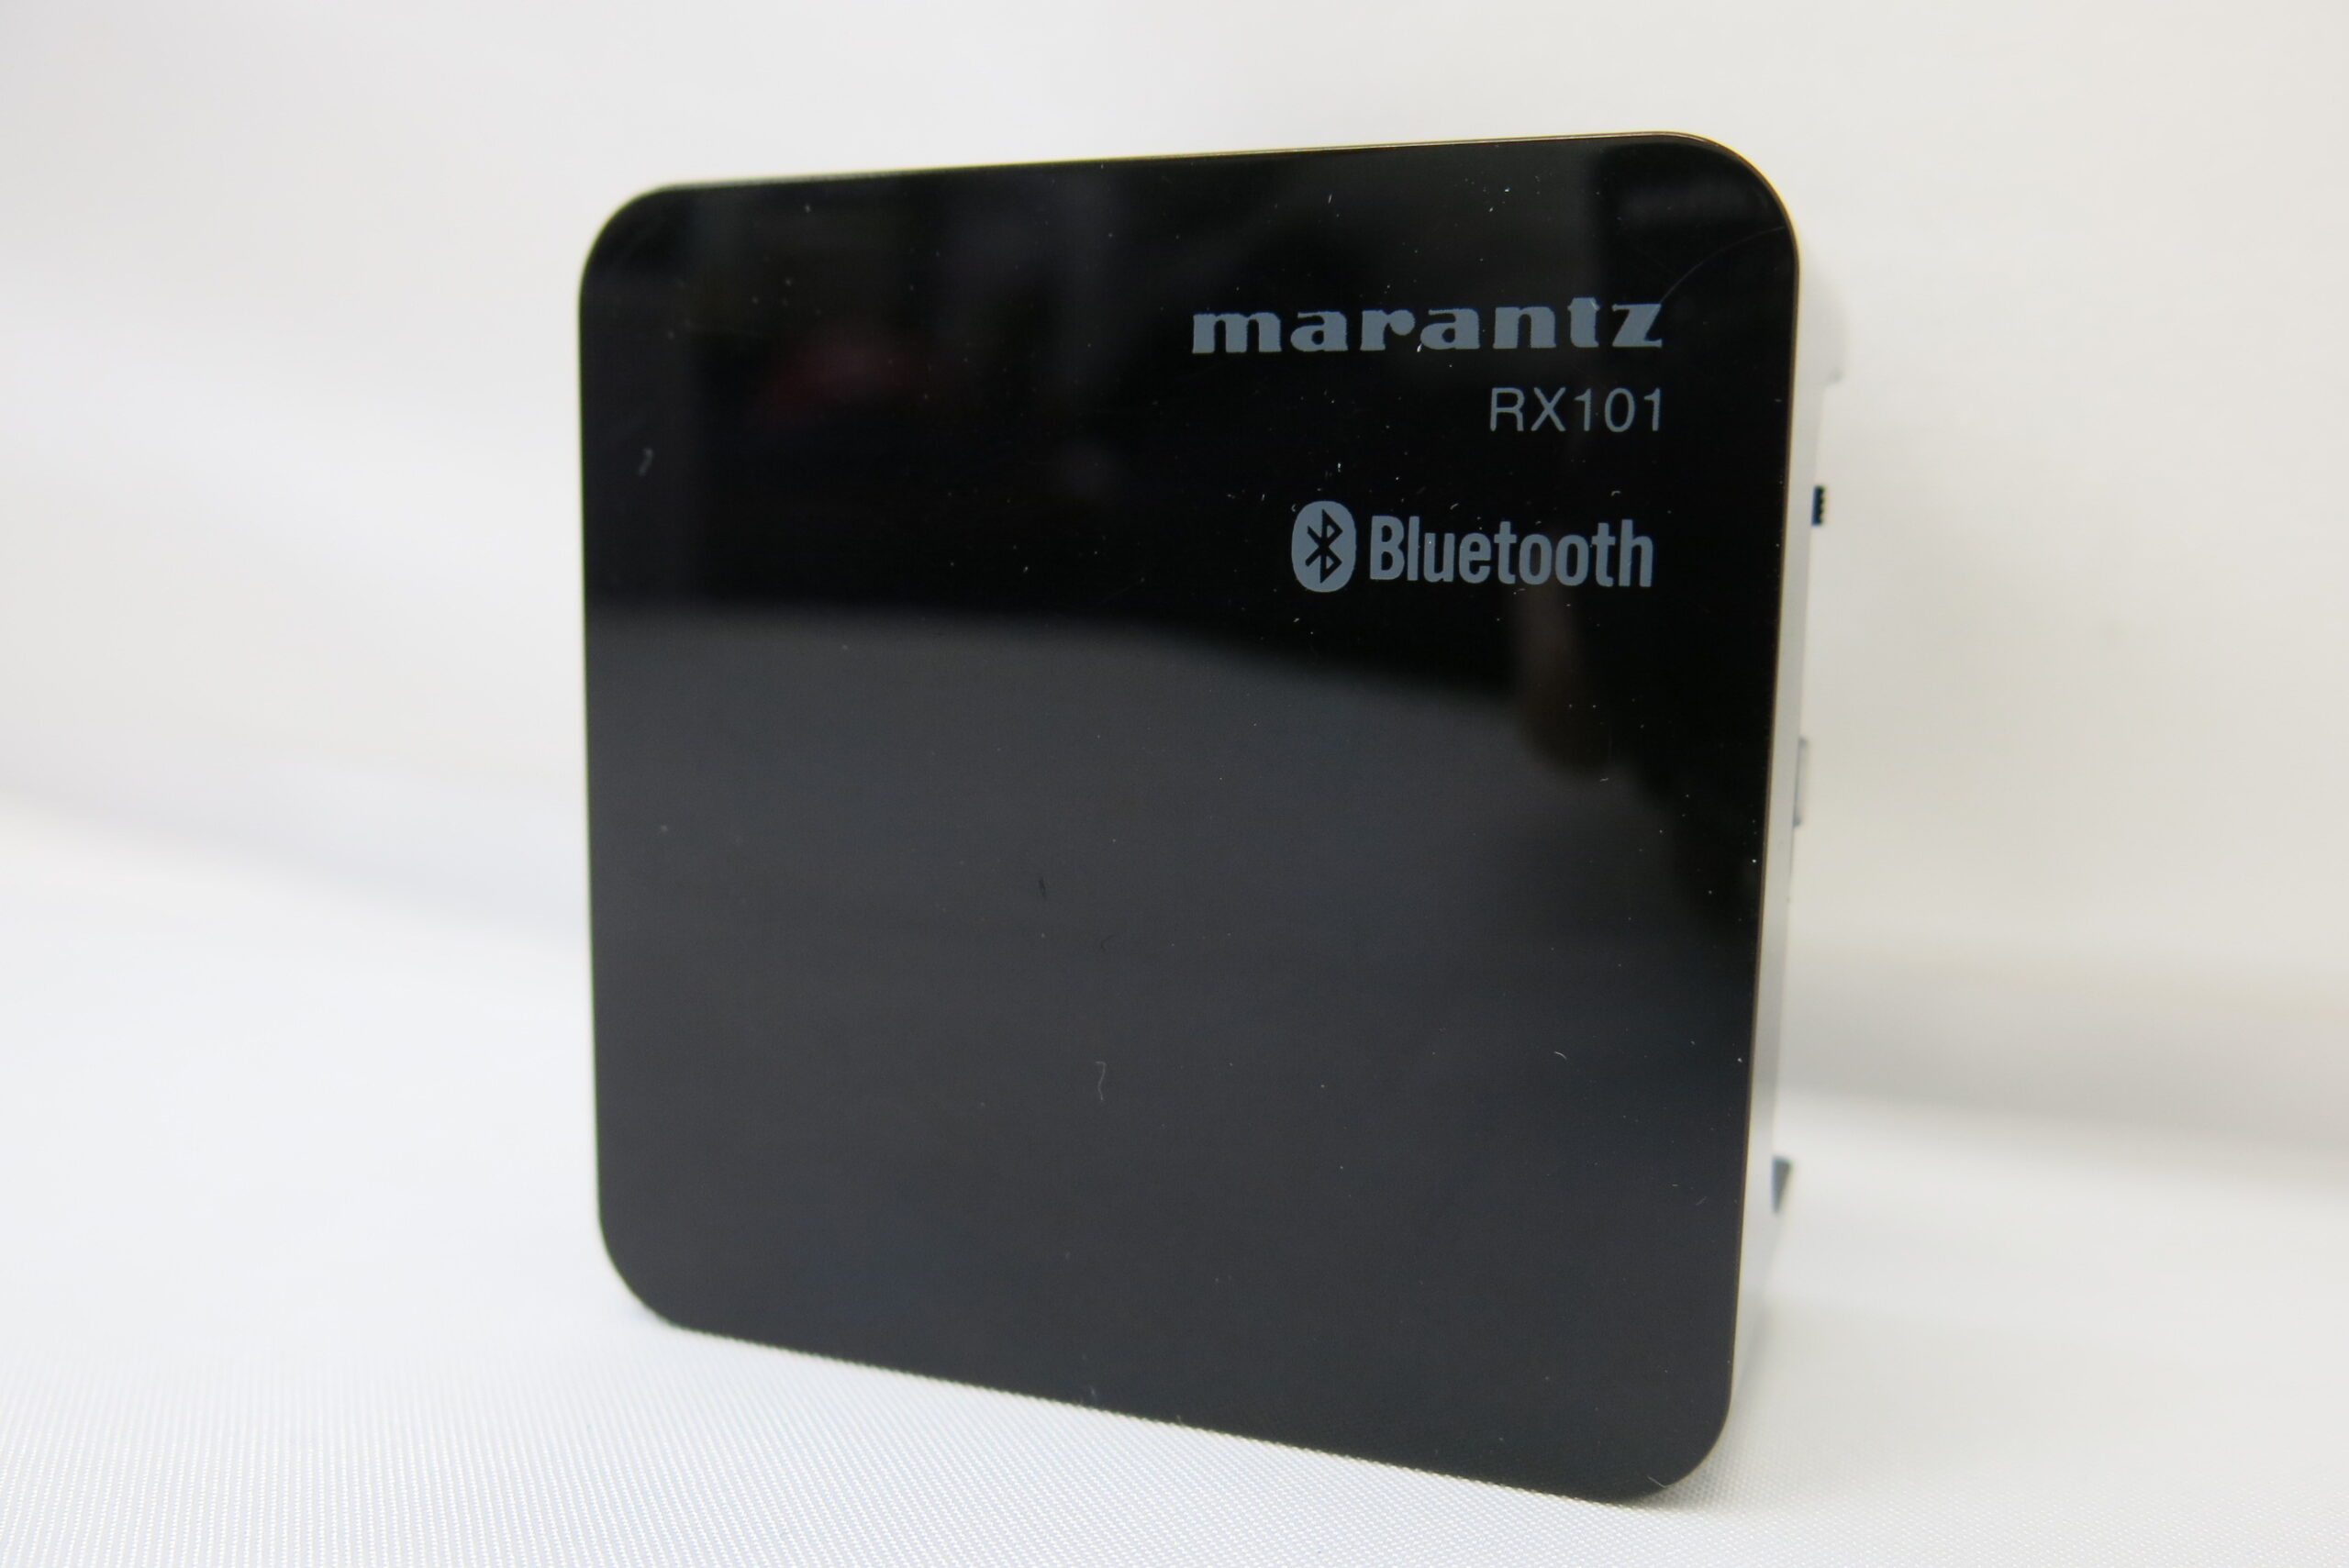 marantz買取しました マランツ RX101 ワイヤレスレシーバー Bluetoothレシーバー | マランツ宅配買取専門サイト － マランツファン  私たちはmarantzの買取に自信があります。ご安心してお任せください!